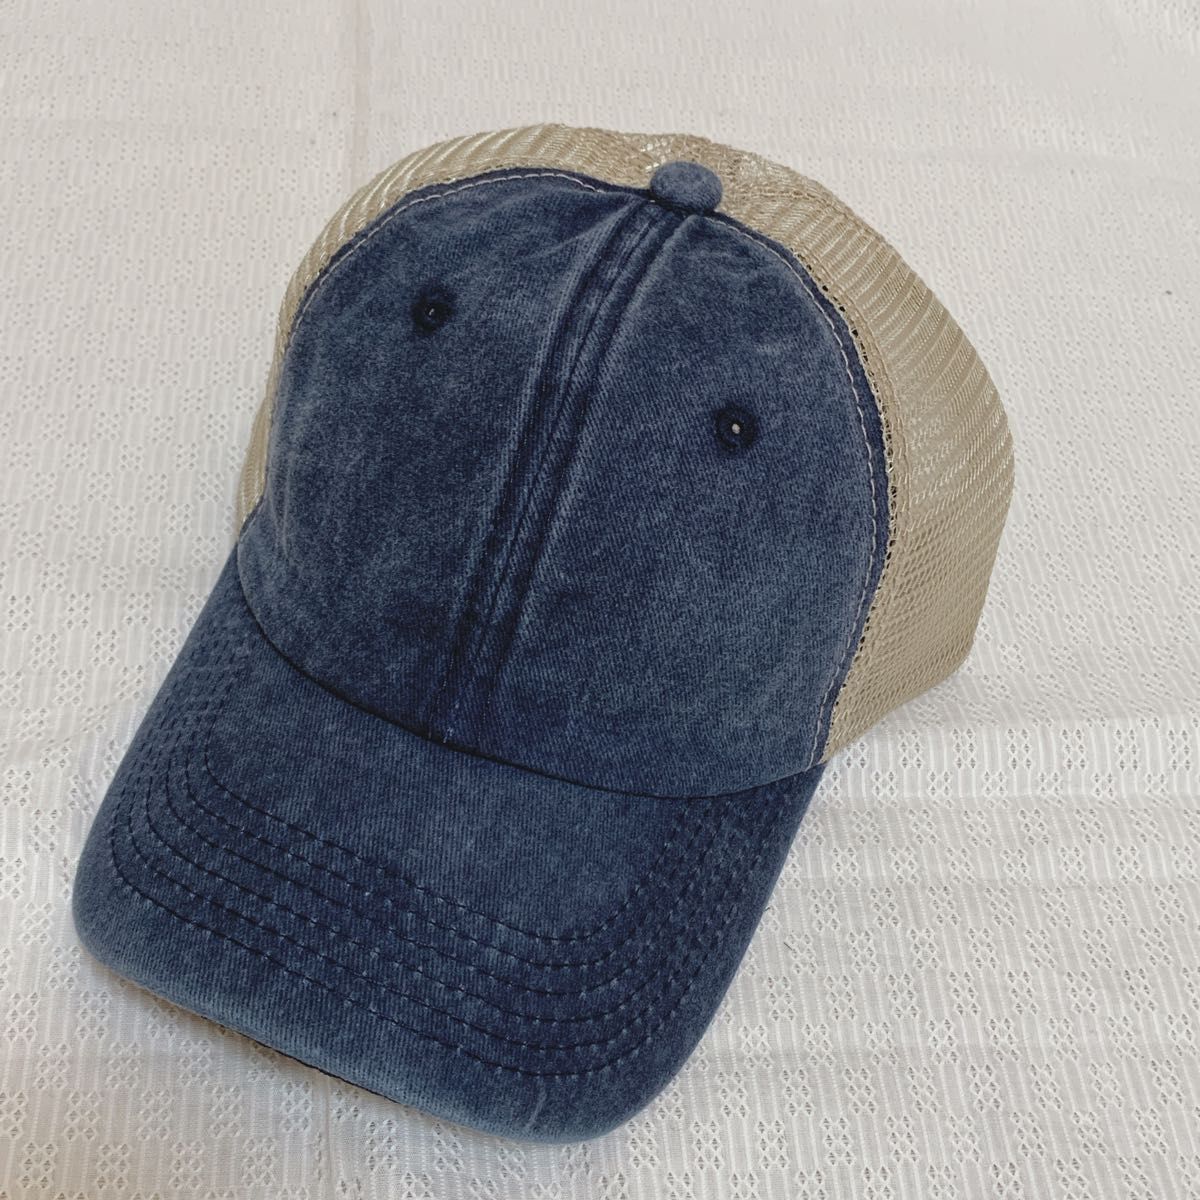 ネイビー 紺色 メッシュキャップ 男女兼用 ウォッシュ加工 レディース メンズ 帽子  UVカット 紫外線対策 日焼け防止